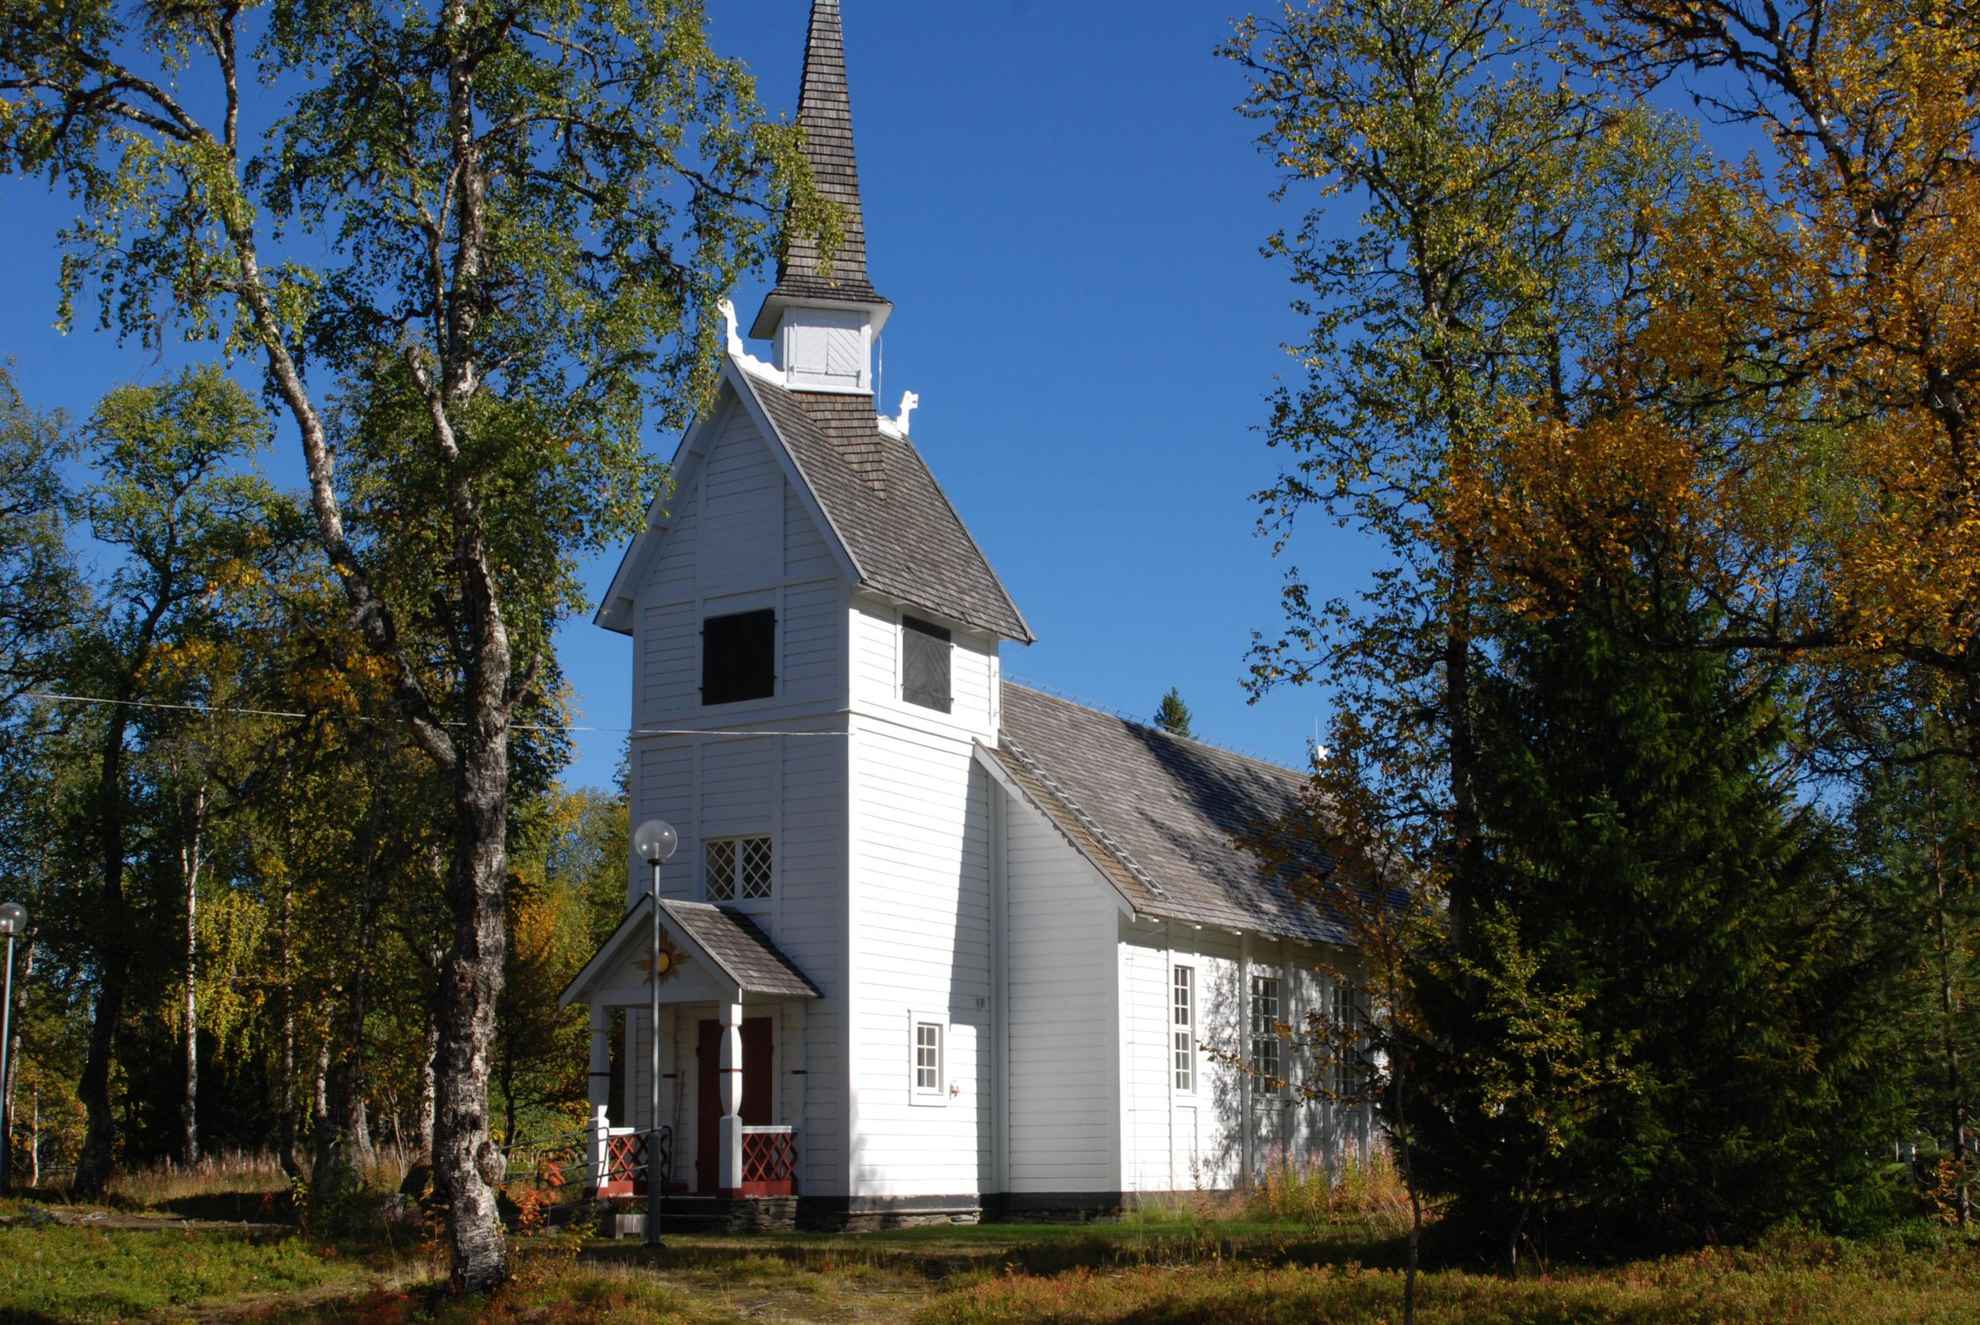 Une chapelle blanche entourée d'arbres à feuilles caduques aux couleurs automnales.